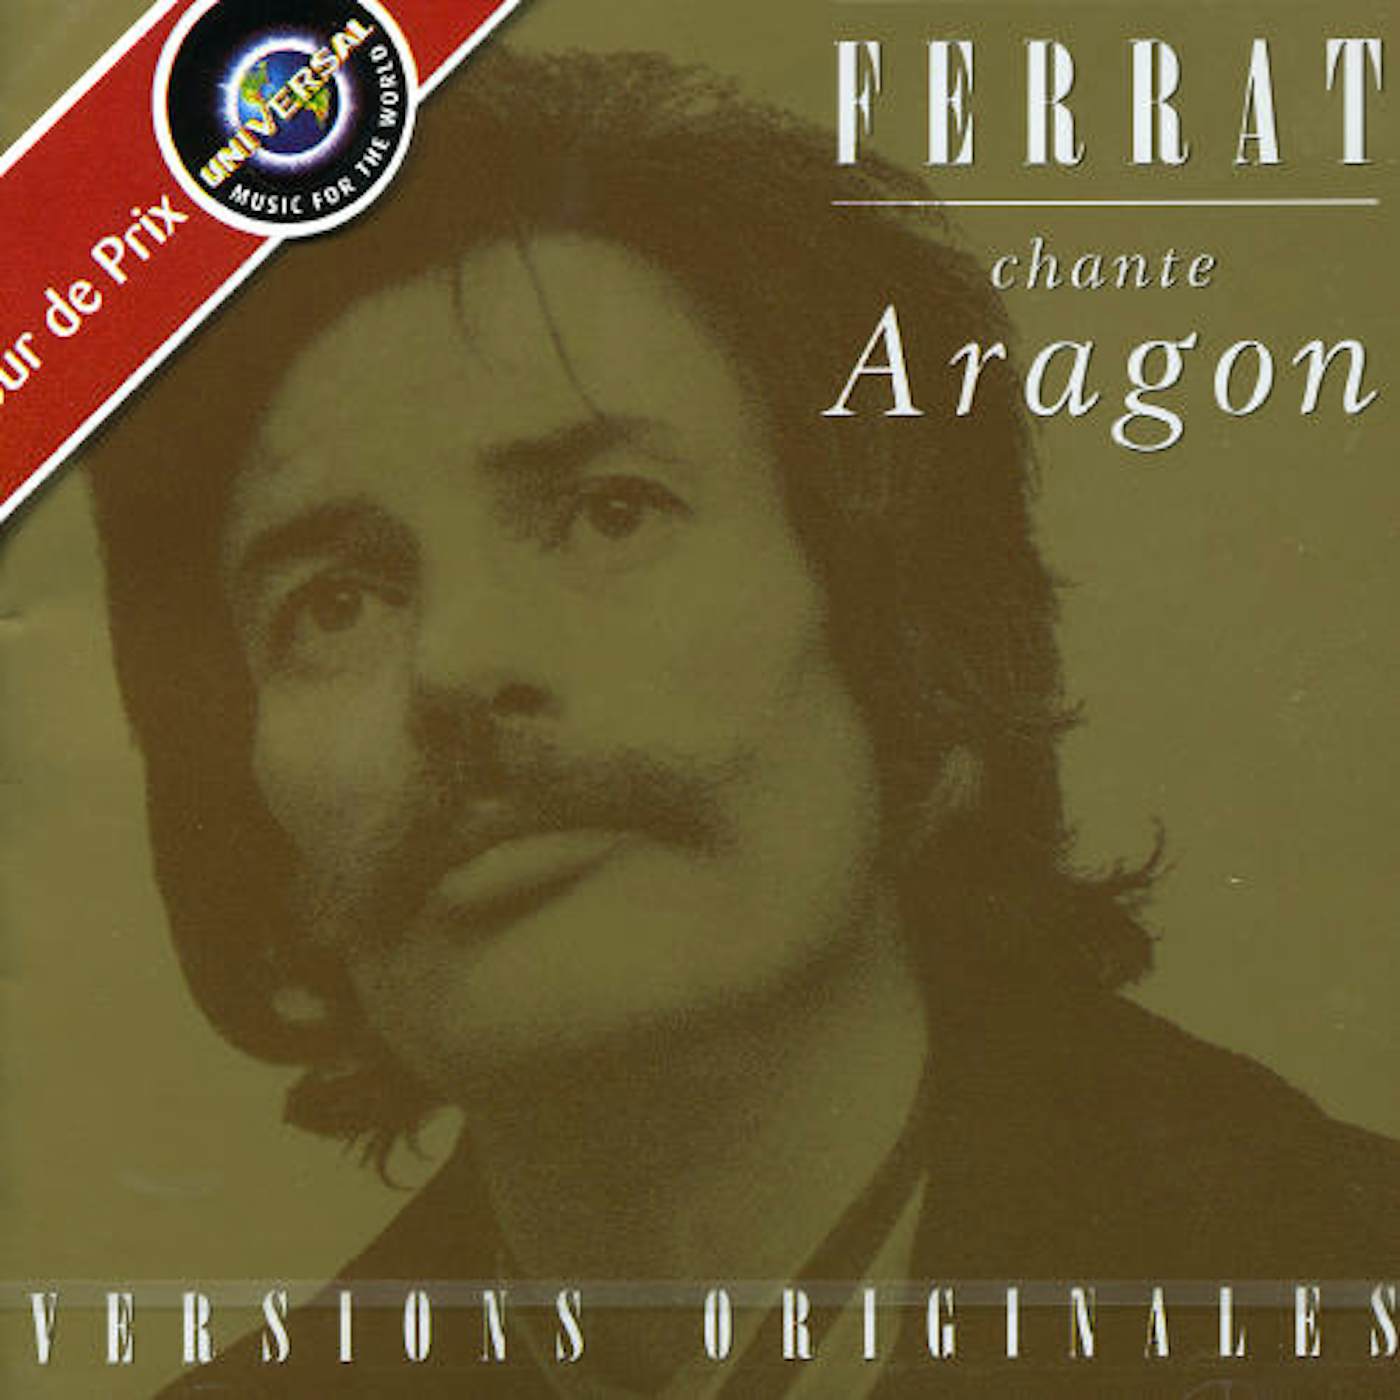 Jean Ferrat FERRAT CHANTE ARAGON CD